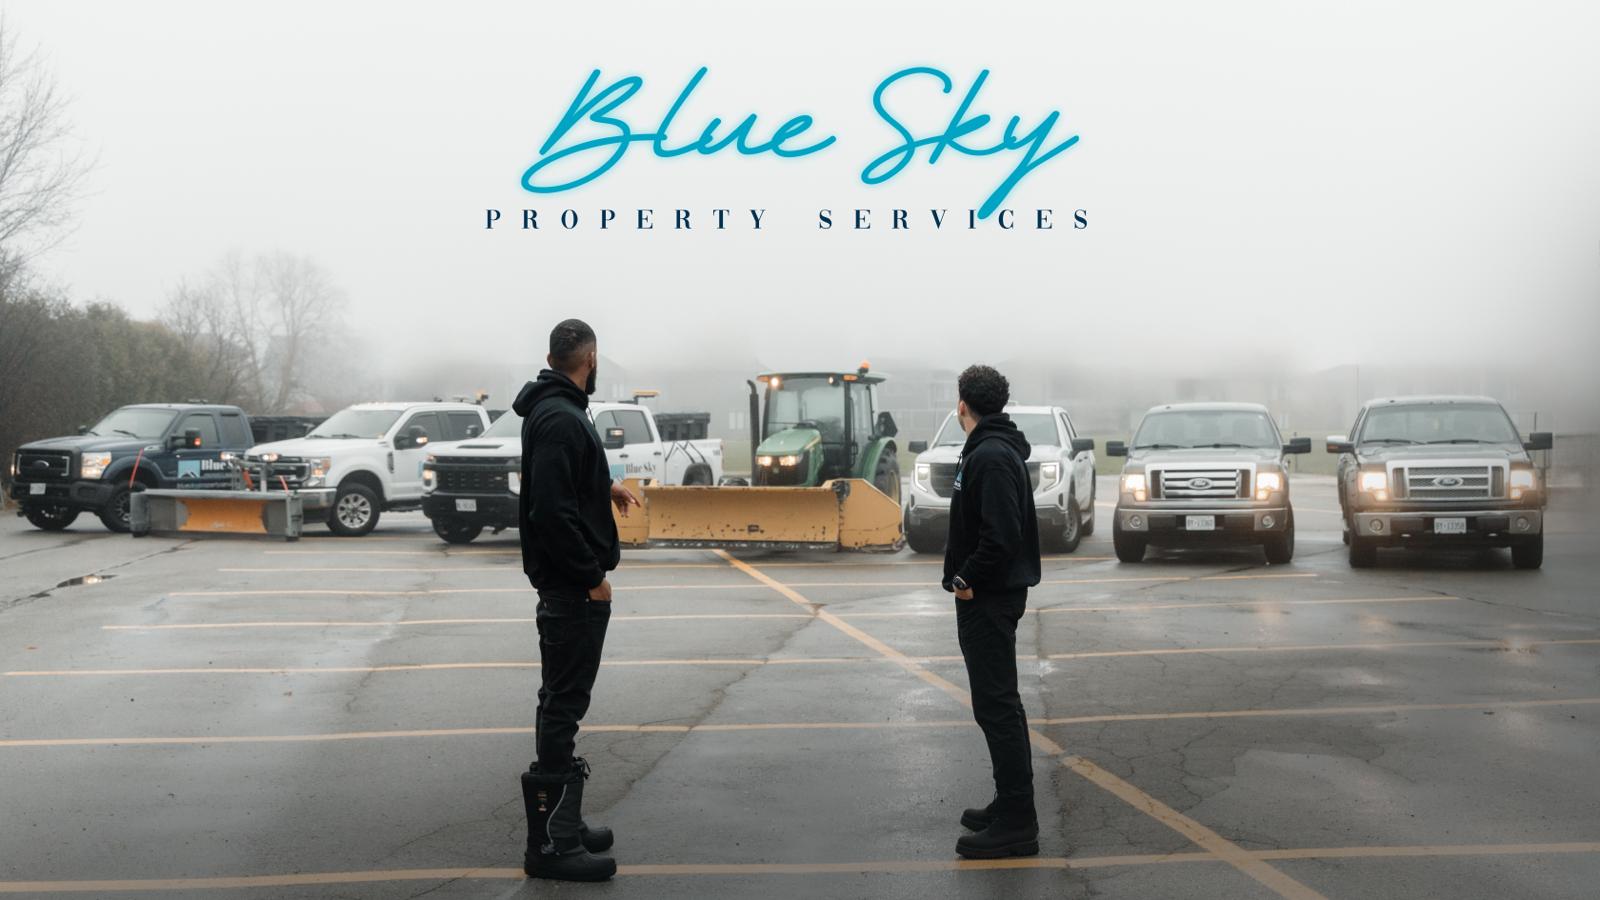 Blue Sky Property Services